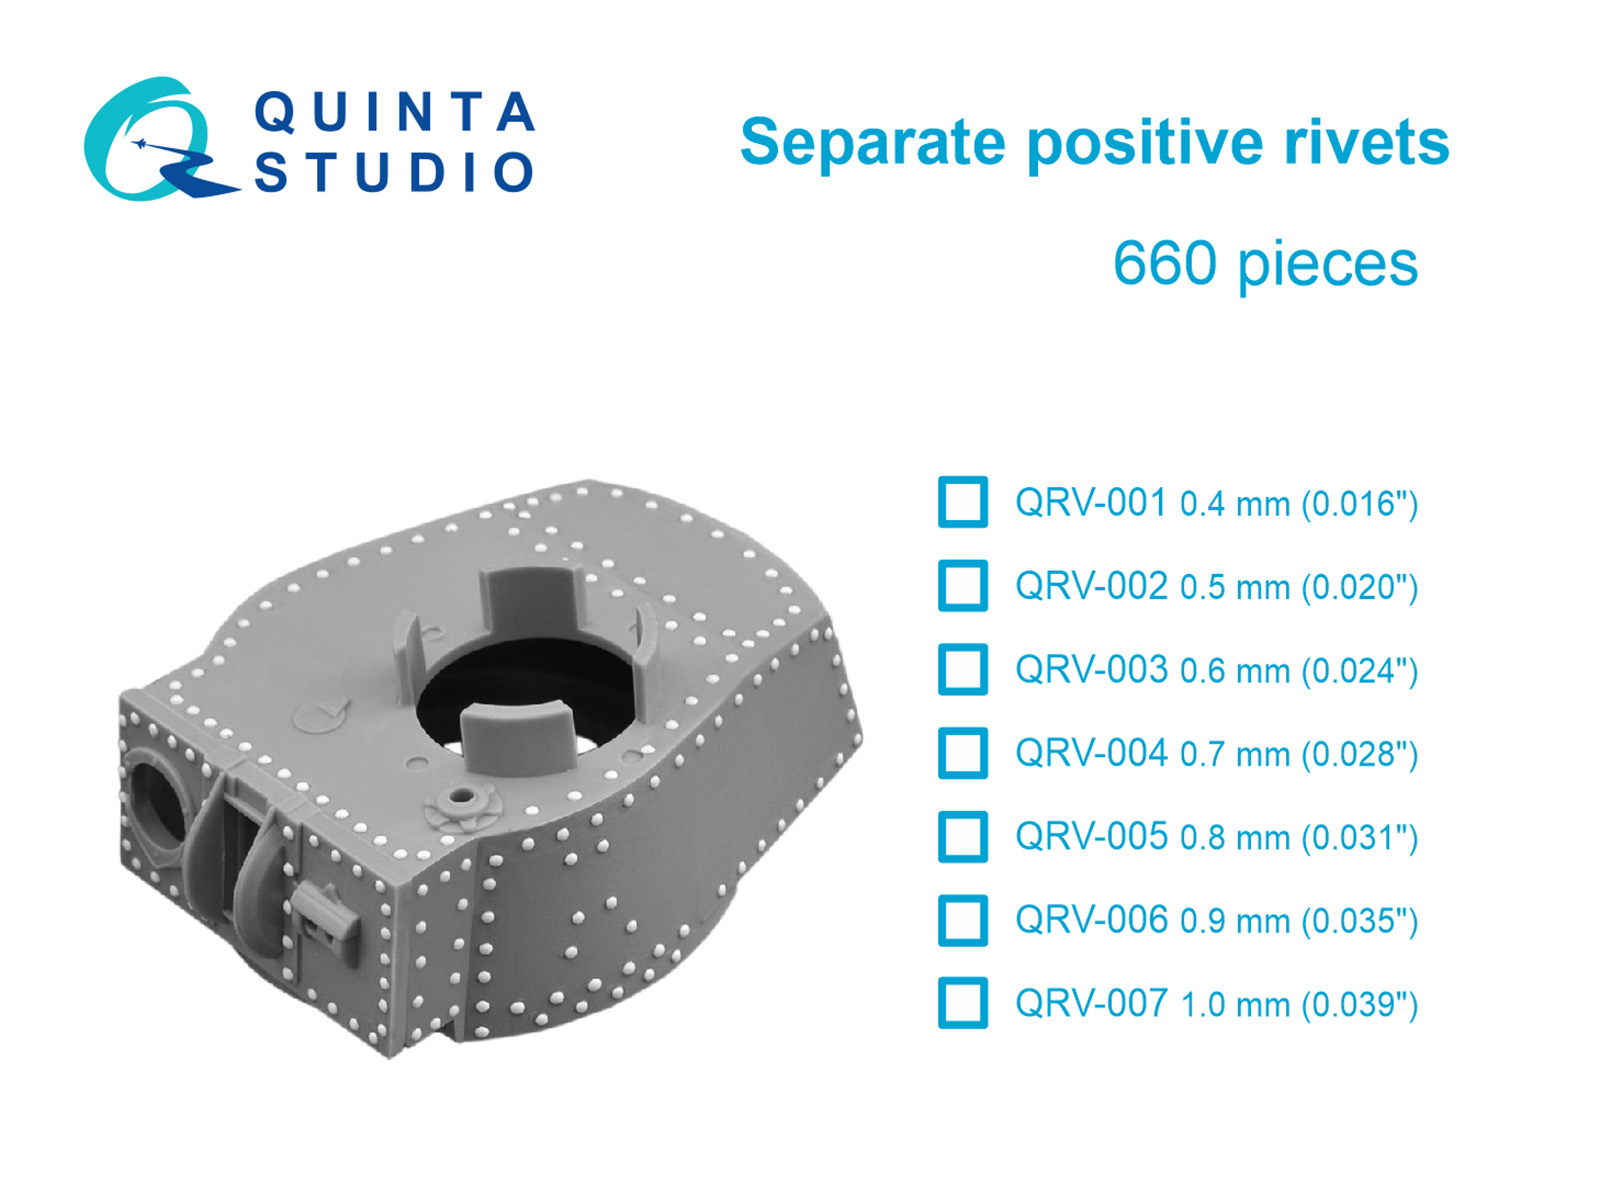 Separate positive rivets, 0.4mm (0.016"), 660 pcs